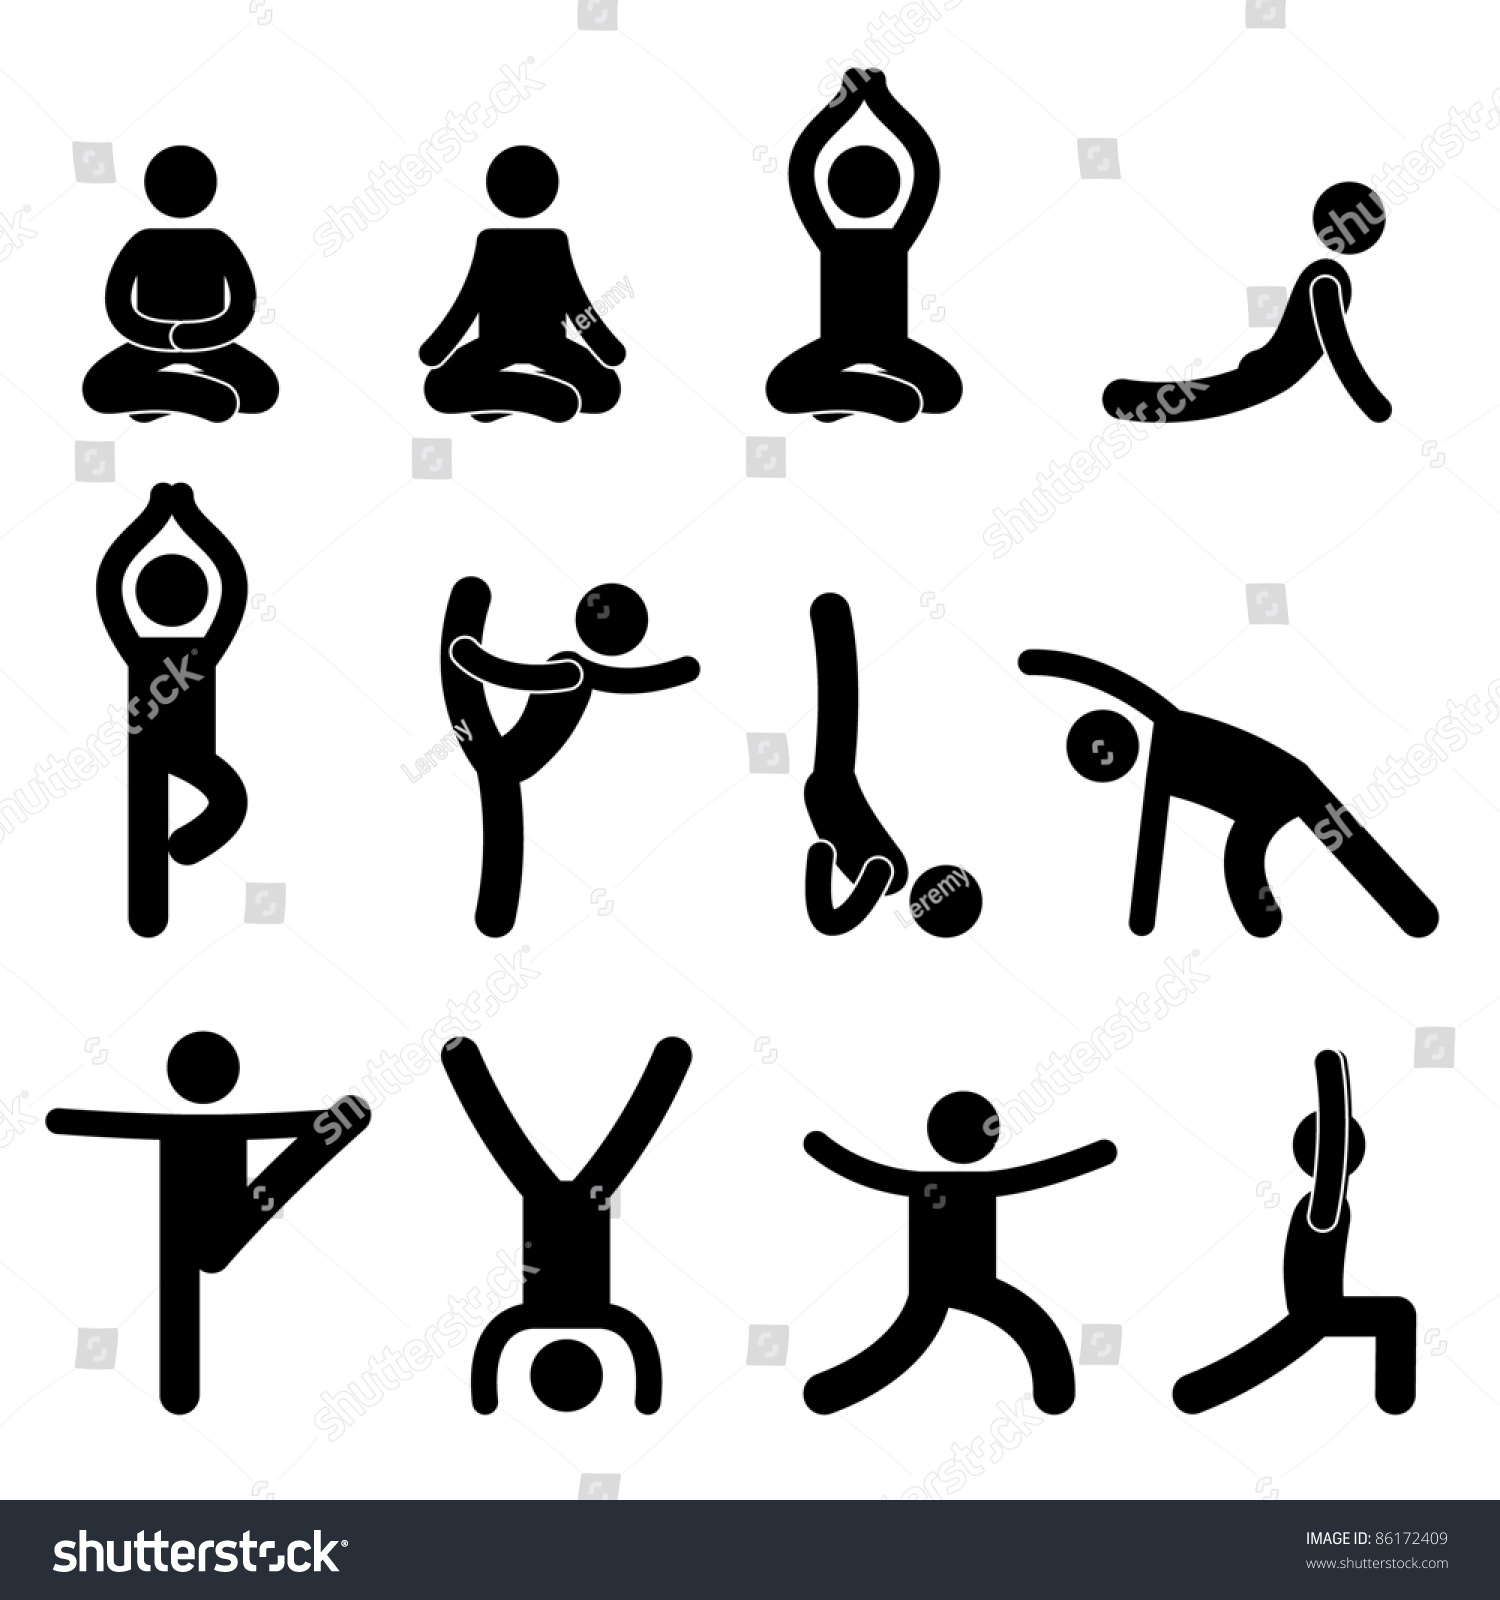 Yoga Meditation Exercise Stretching People Icon Stock Illustration ...